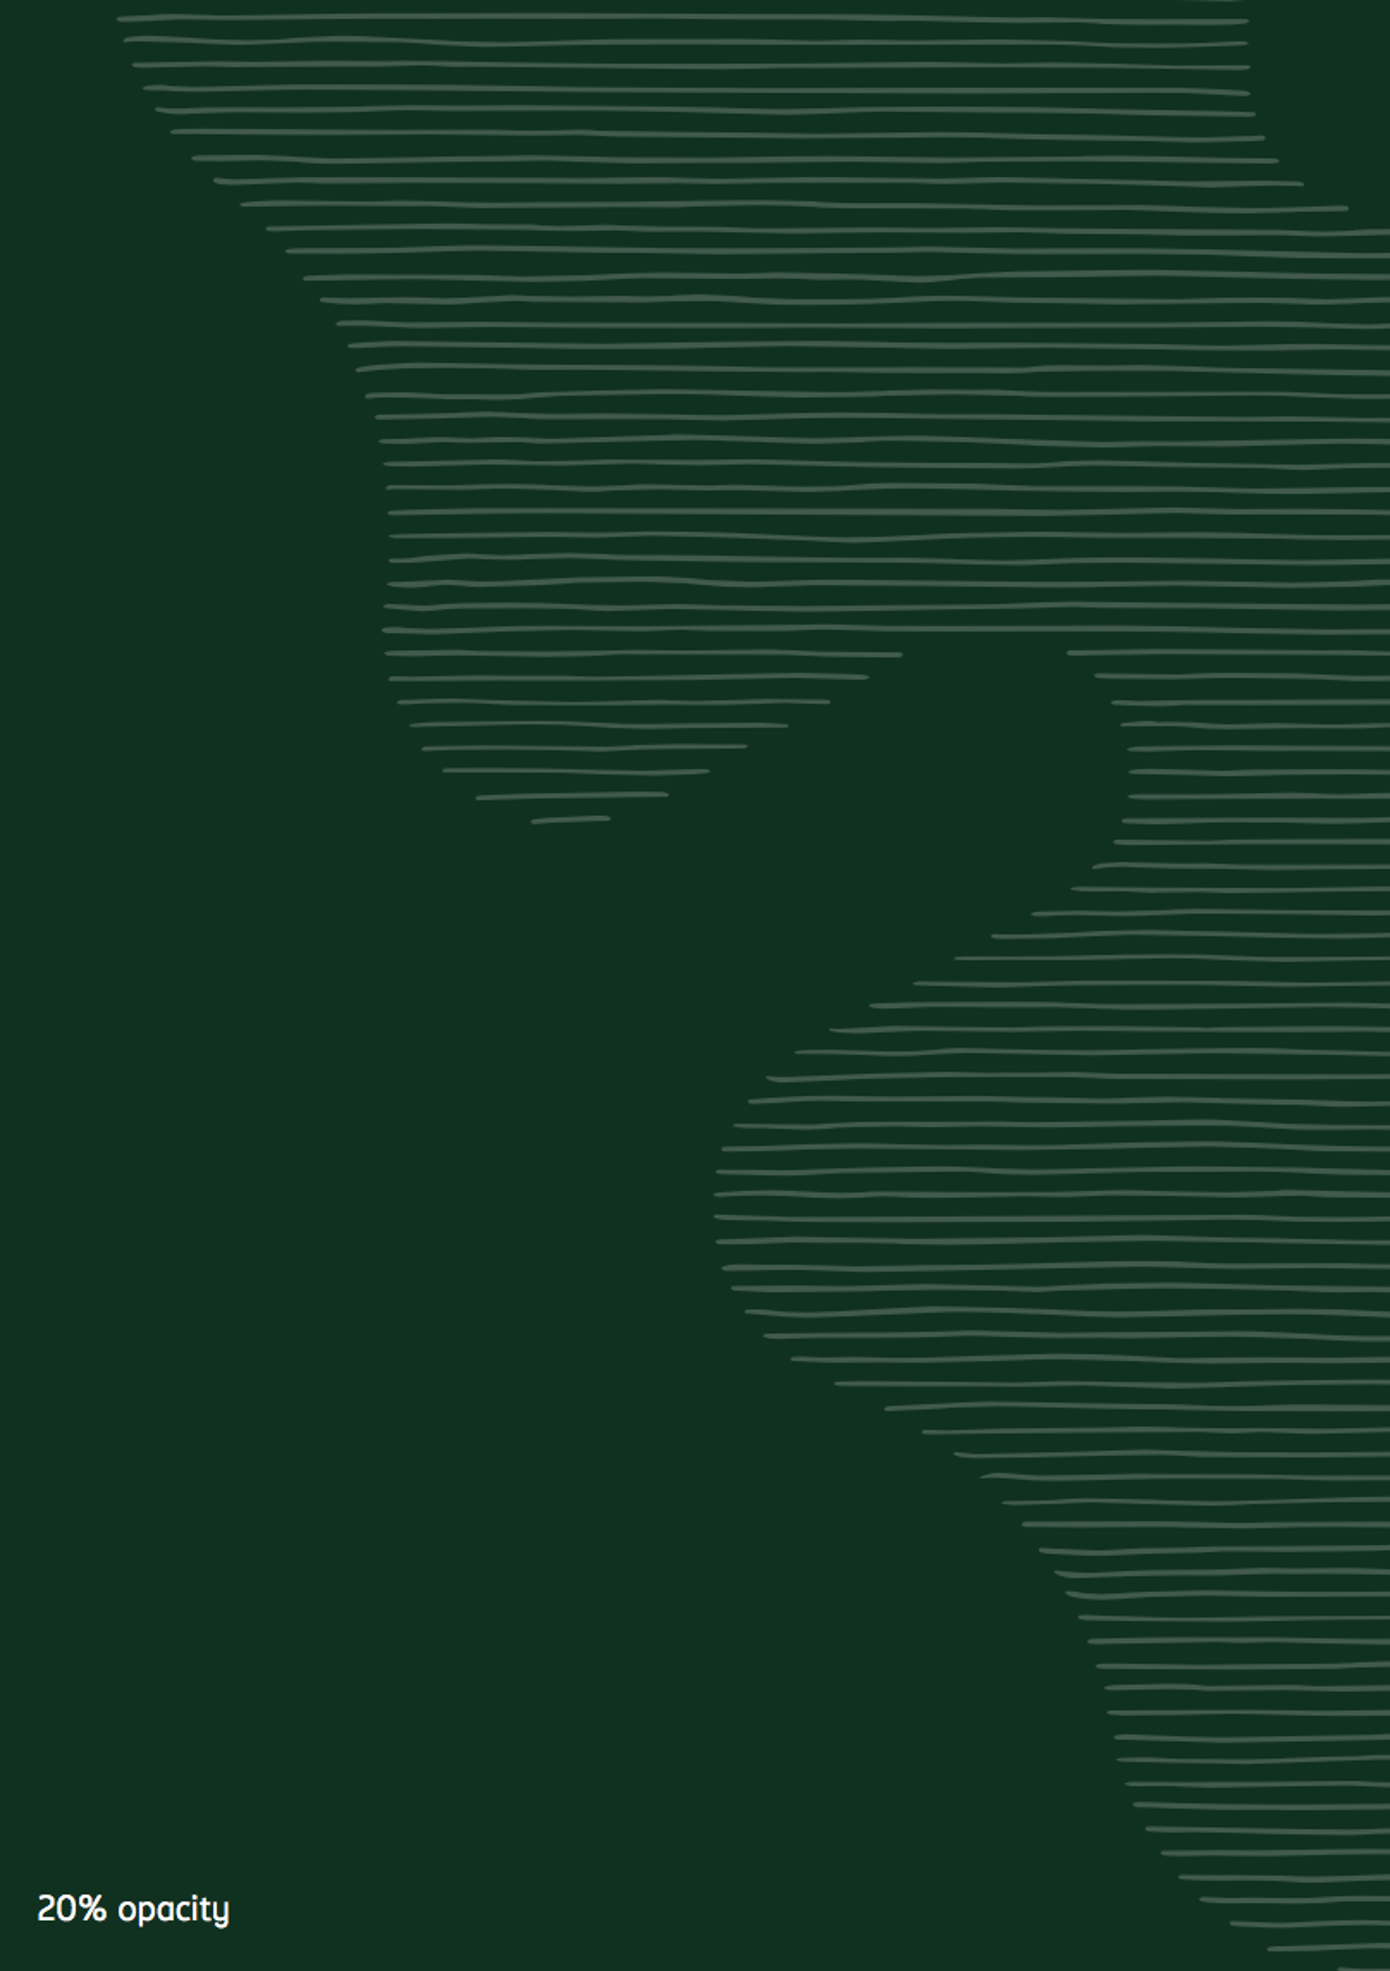 Hvidt humleblad på Carlsberg grøn baggrund